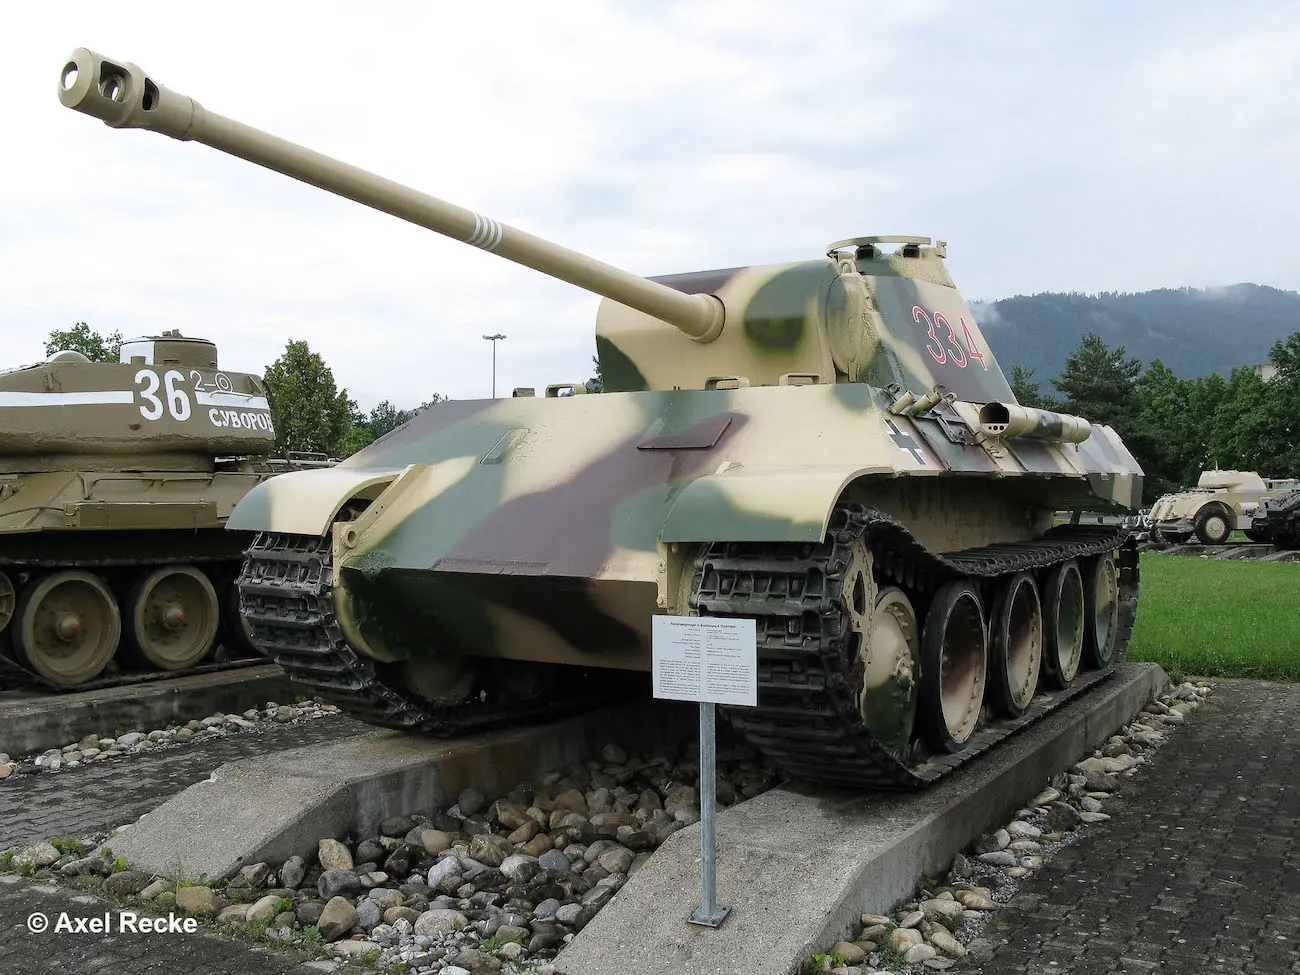 Revell 03273 -  Geschenkset Panther Ausf D